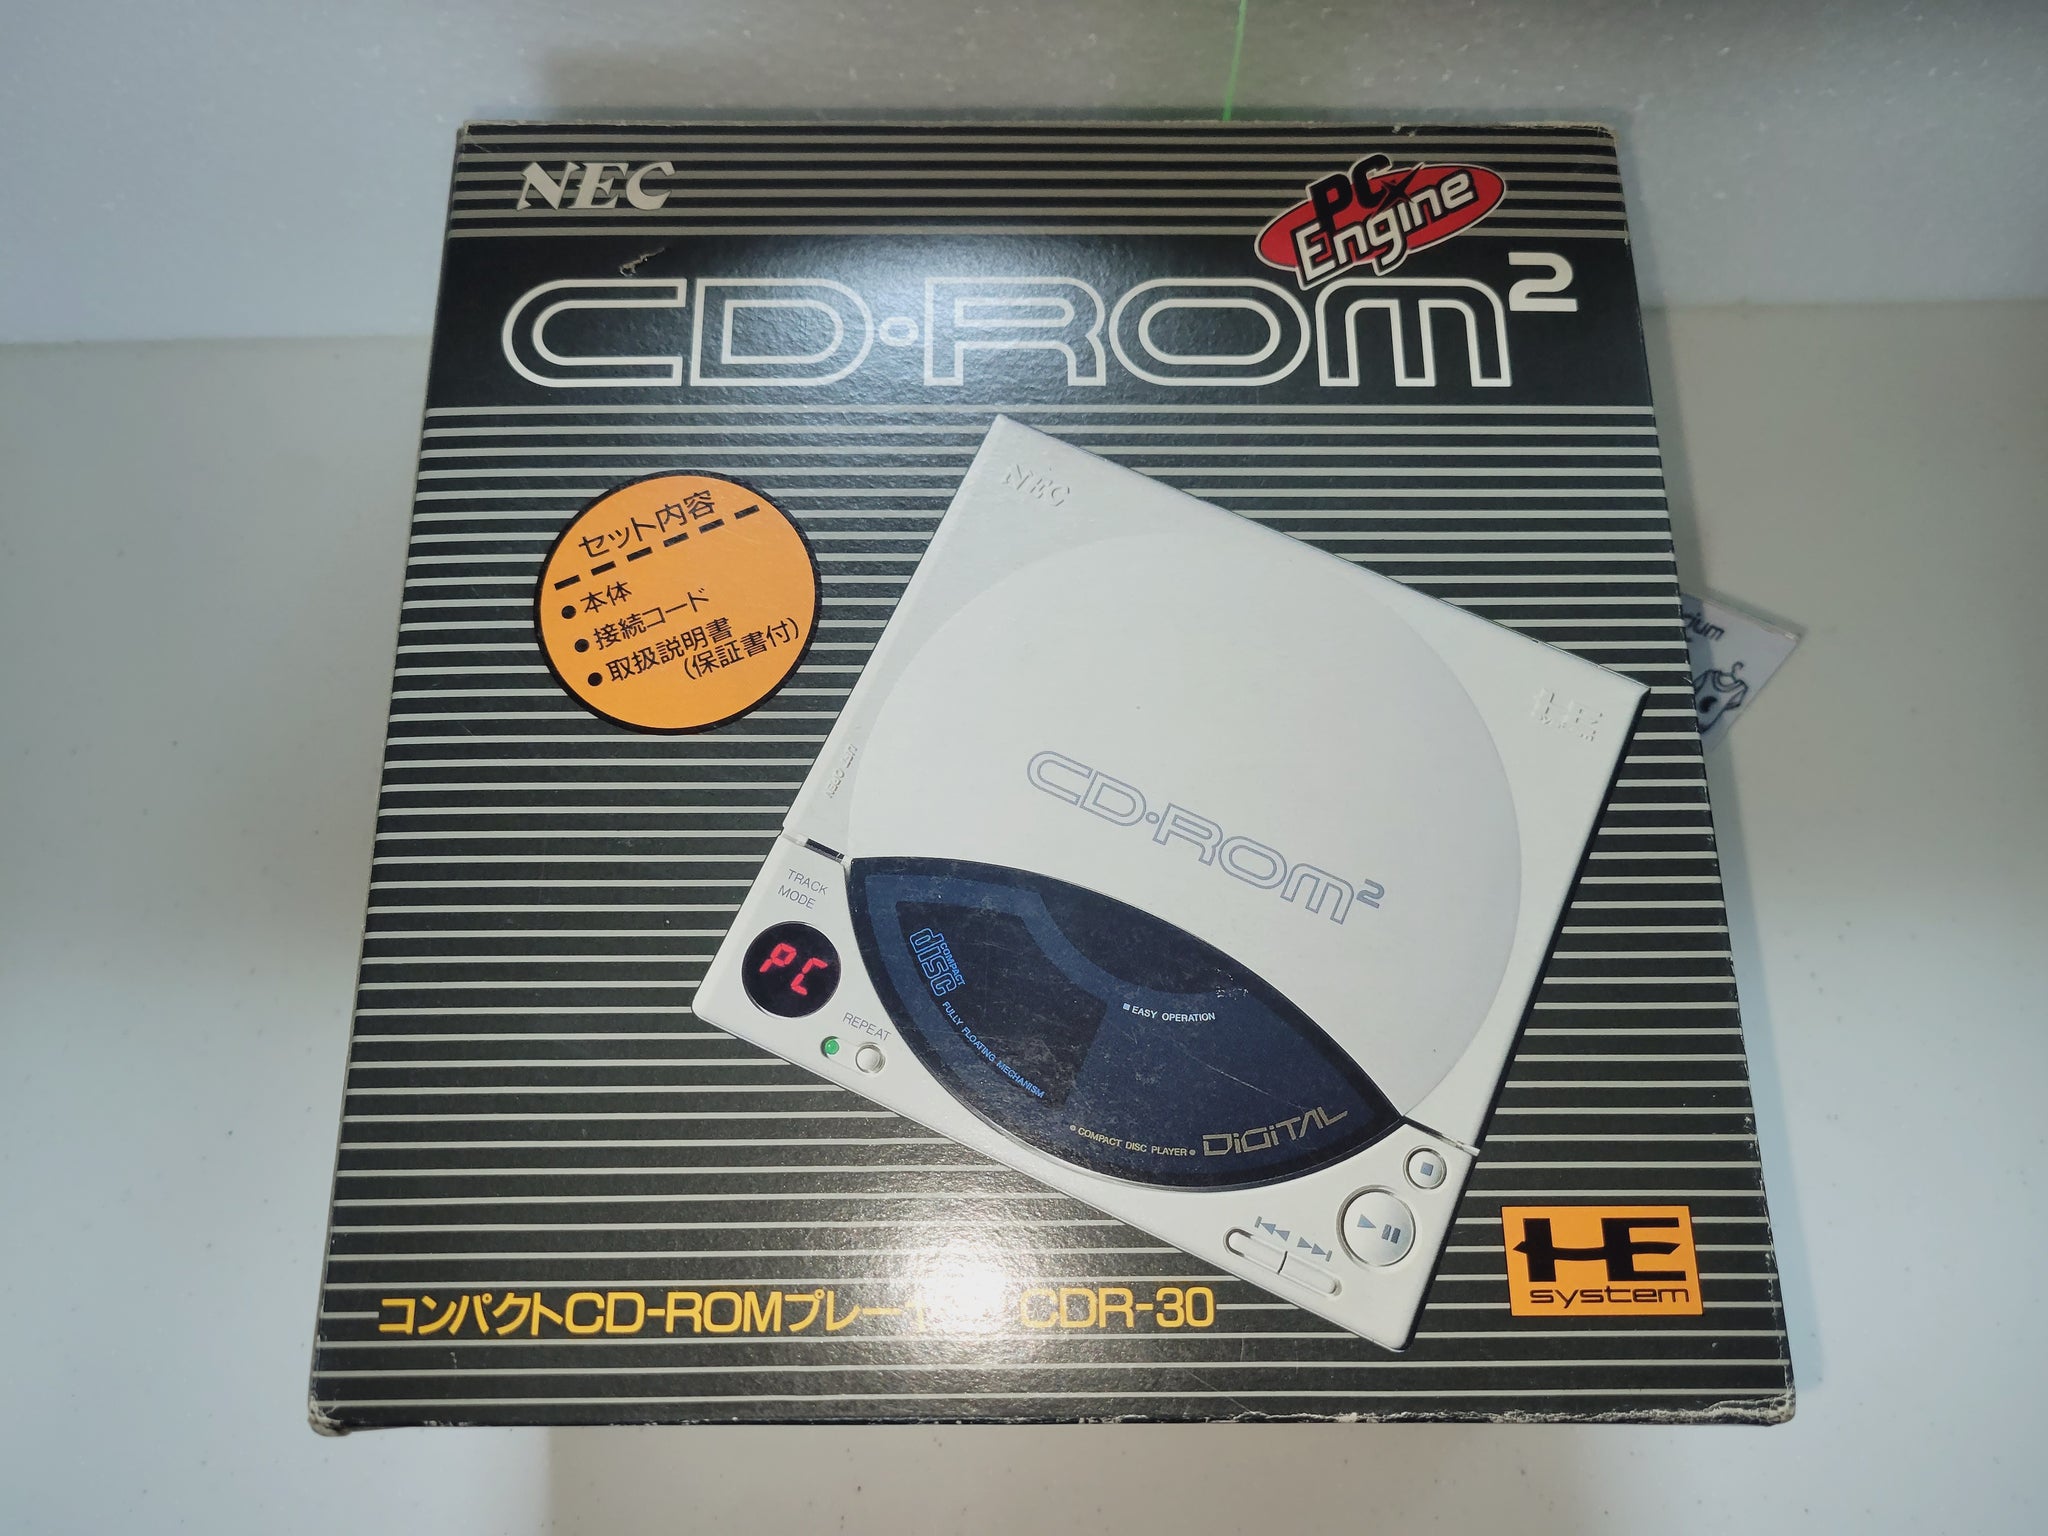 PC Engine CD-ROM2 [CDR-30] - Nec Pce PcEngine – The Emporium 